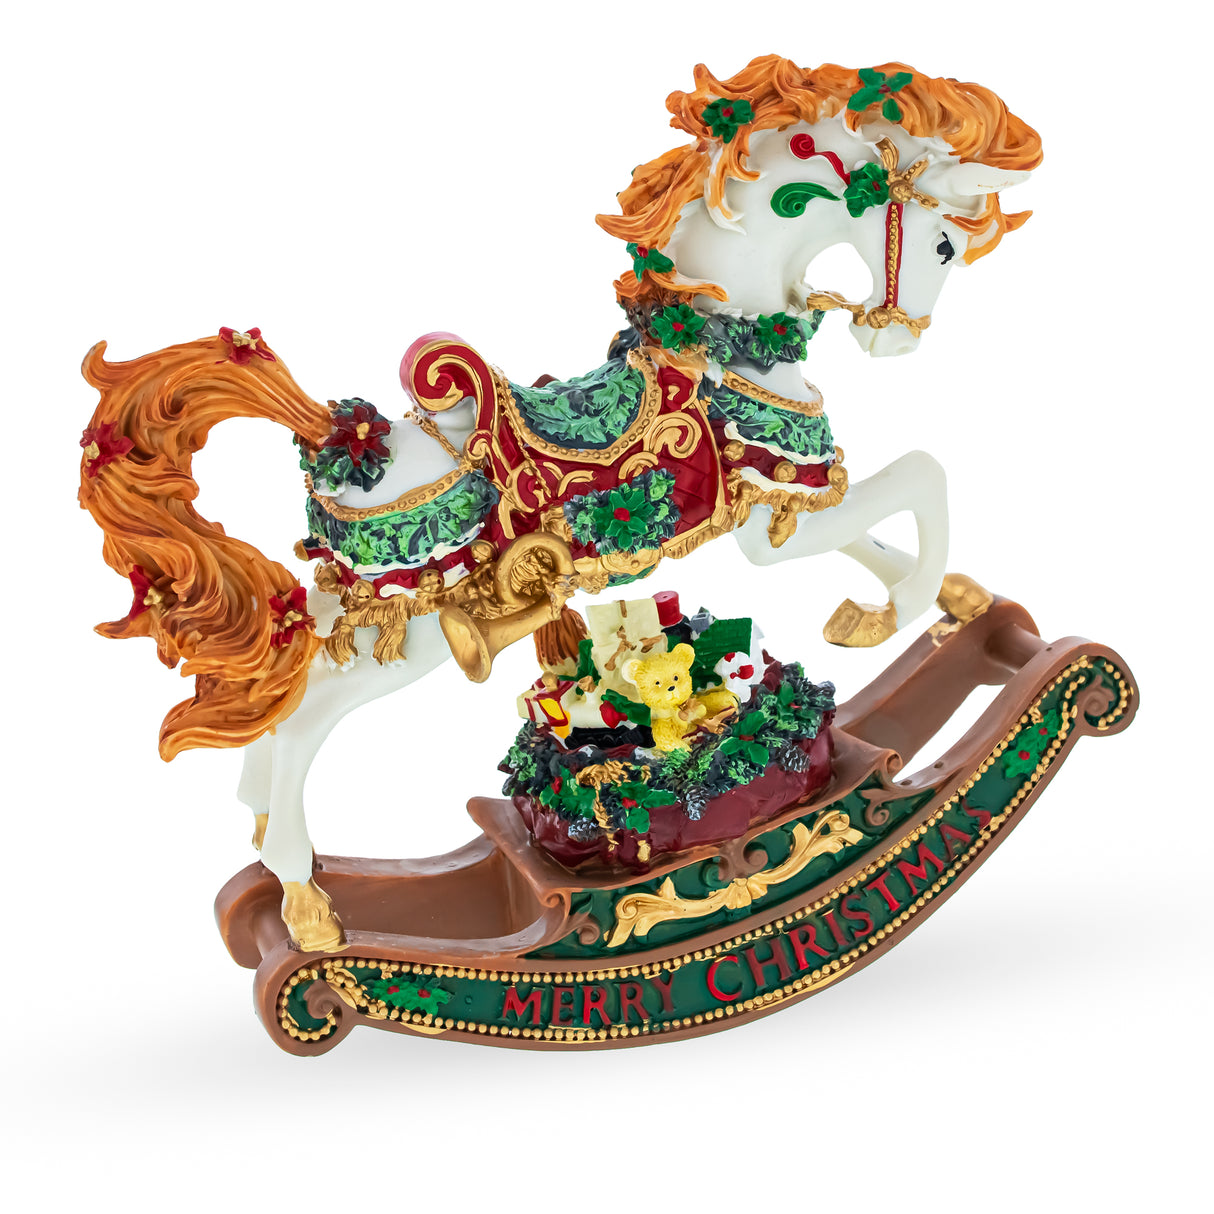 Buy Musical Figurines Horses by BestPysanky Online Gift Ship